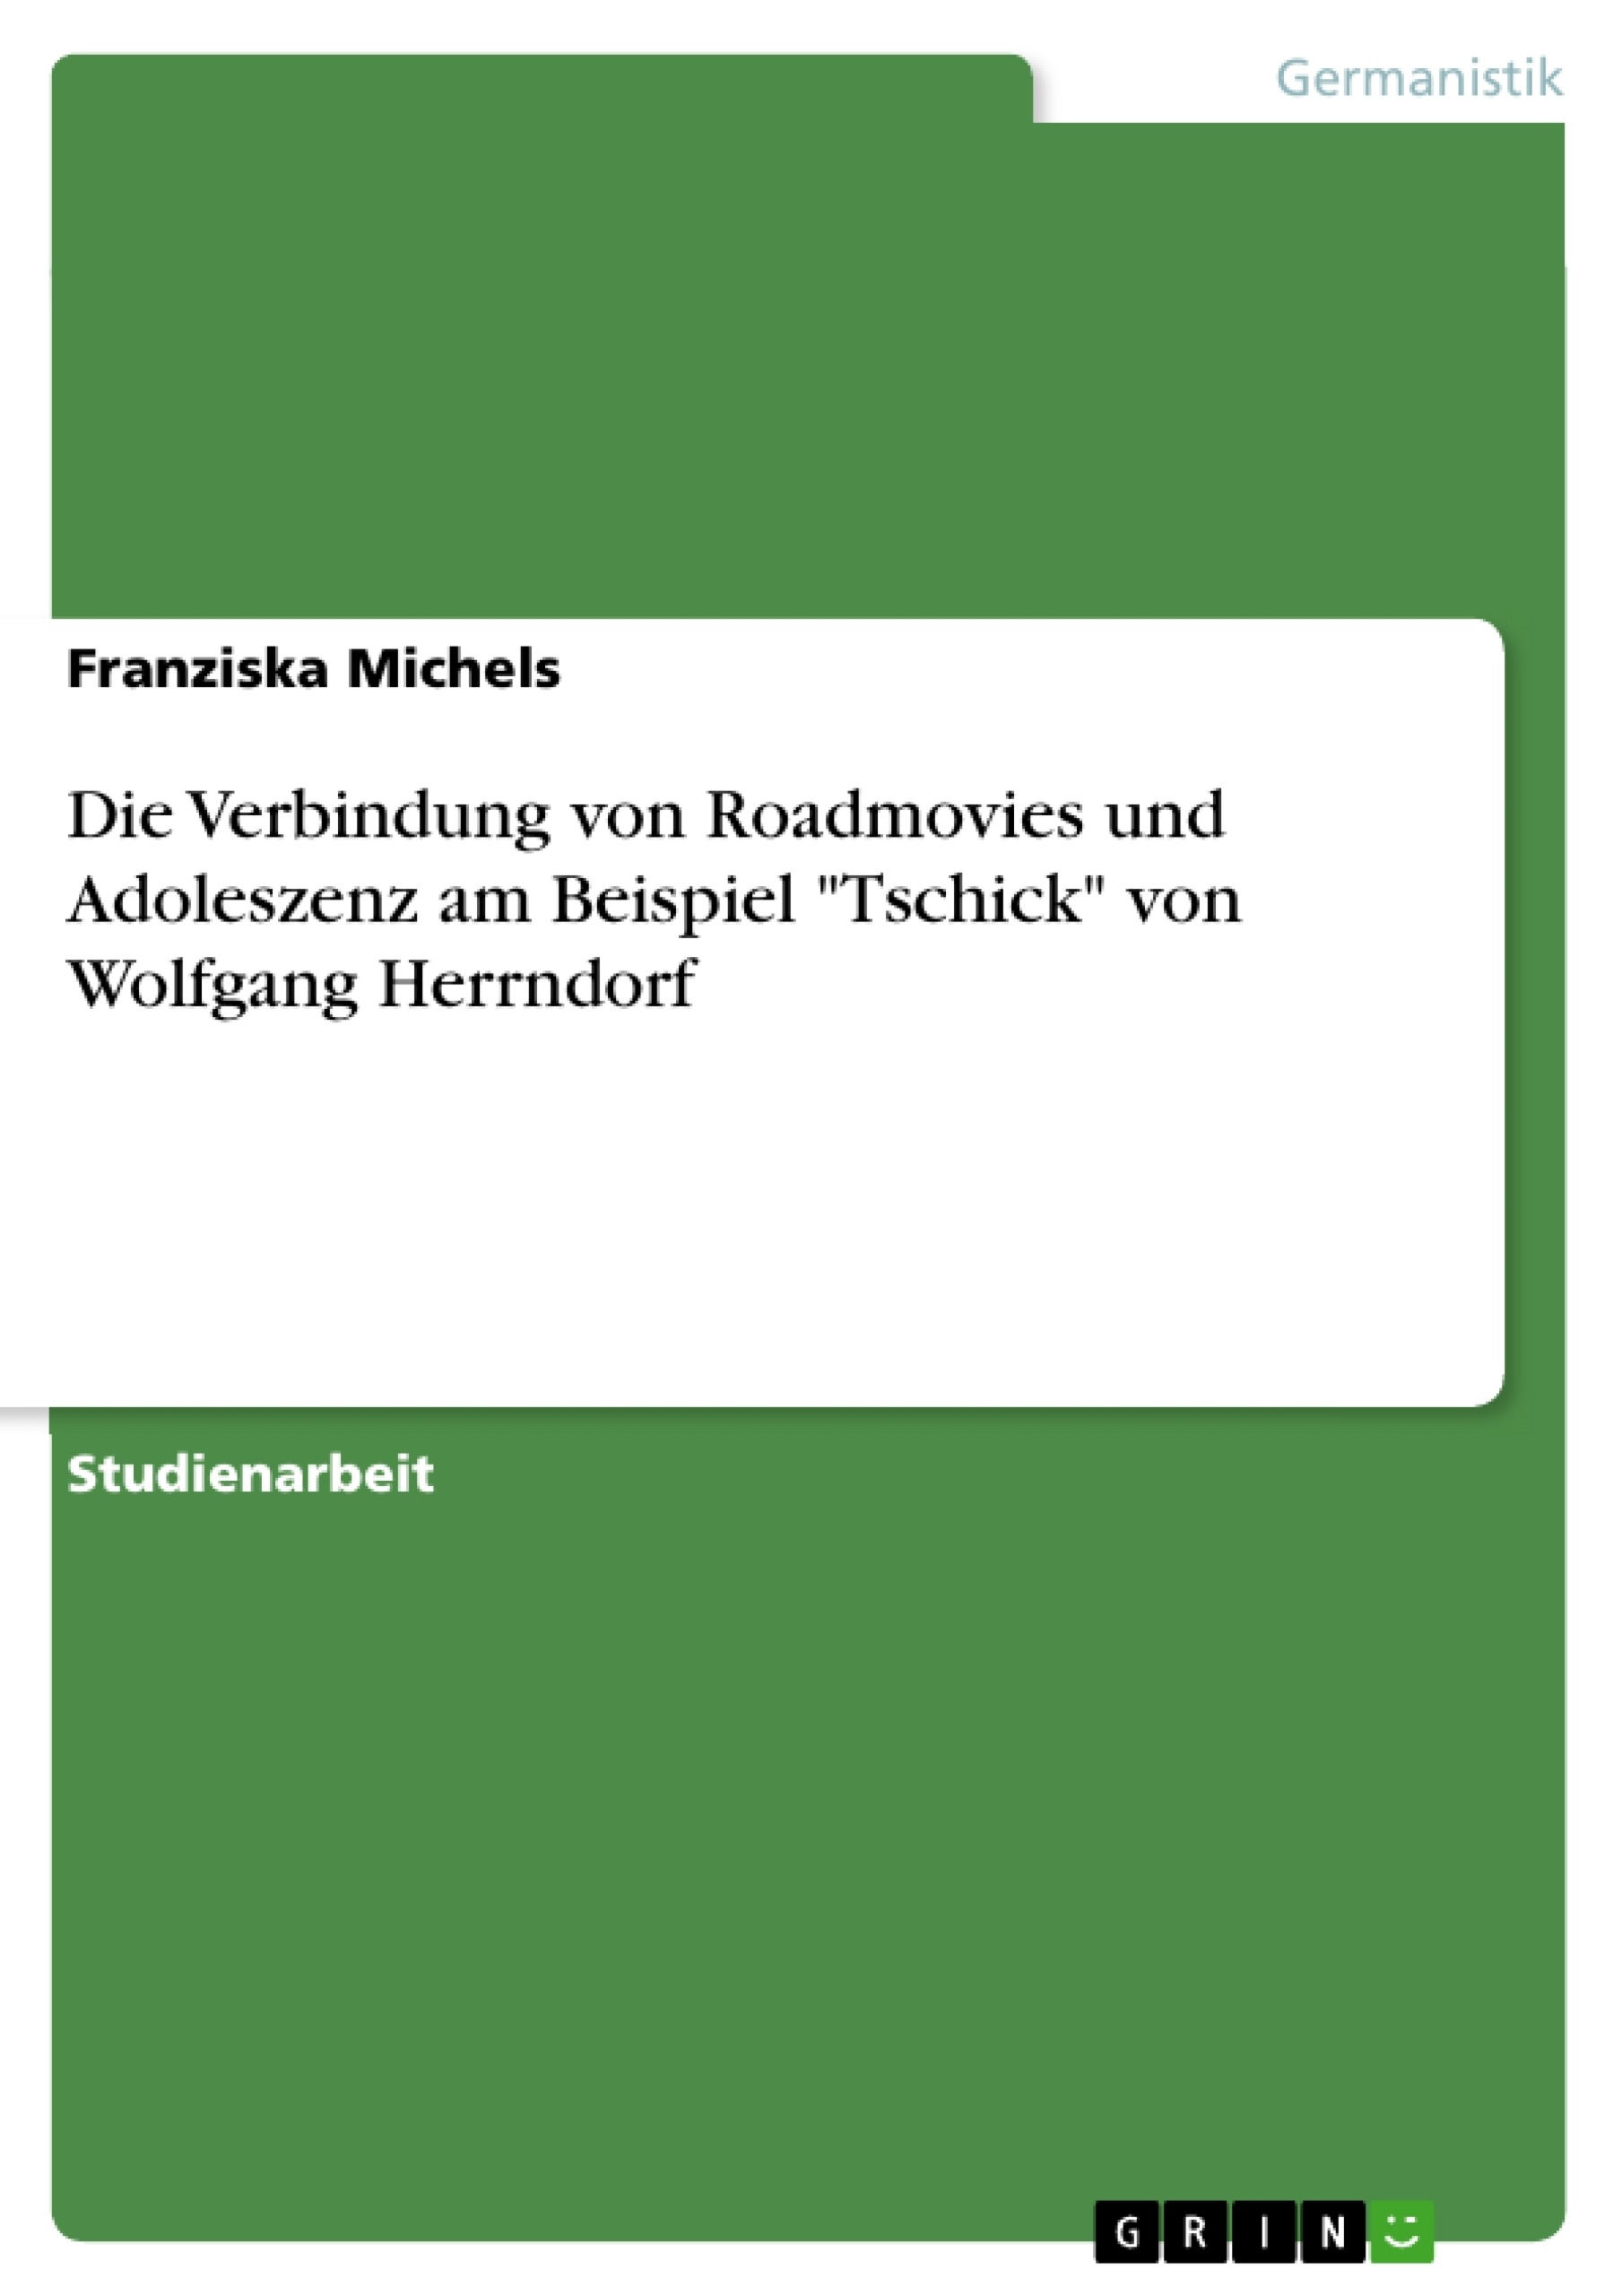 Título: Die Verbindung von Roadmovies und Adoleszenz am Beispiel "Tschick" von Wolfgang Herrndorf